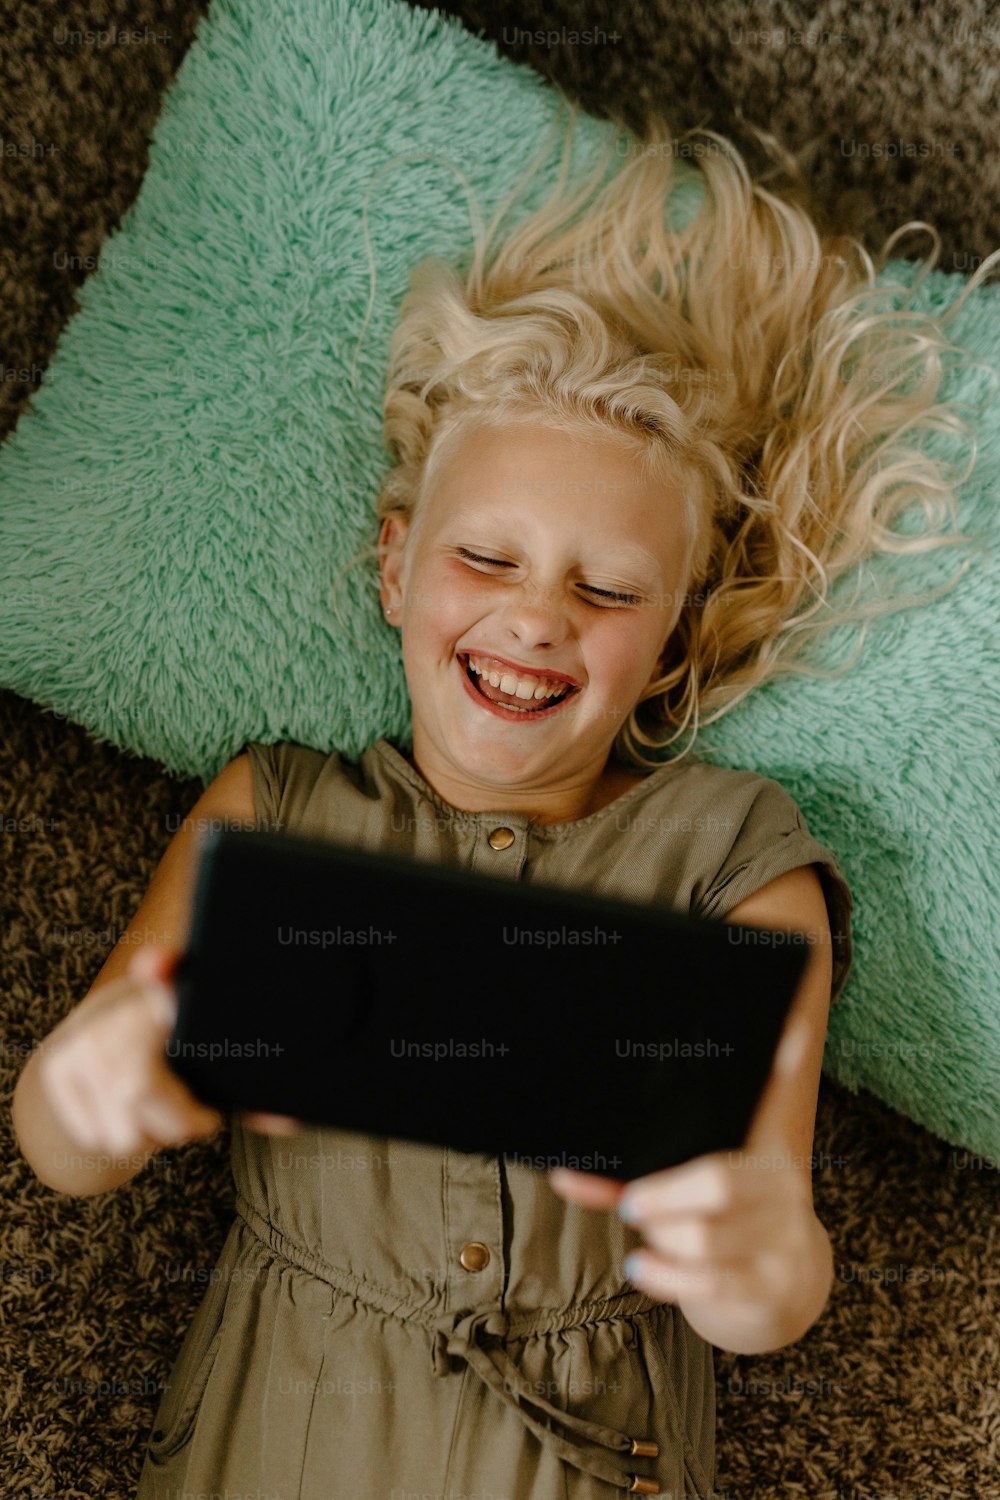 태블릿을 들고 바닥에 누워 있는 어린 소녀